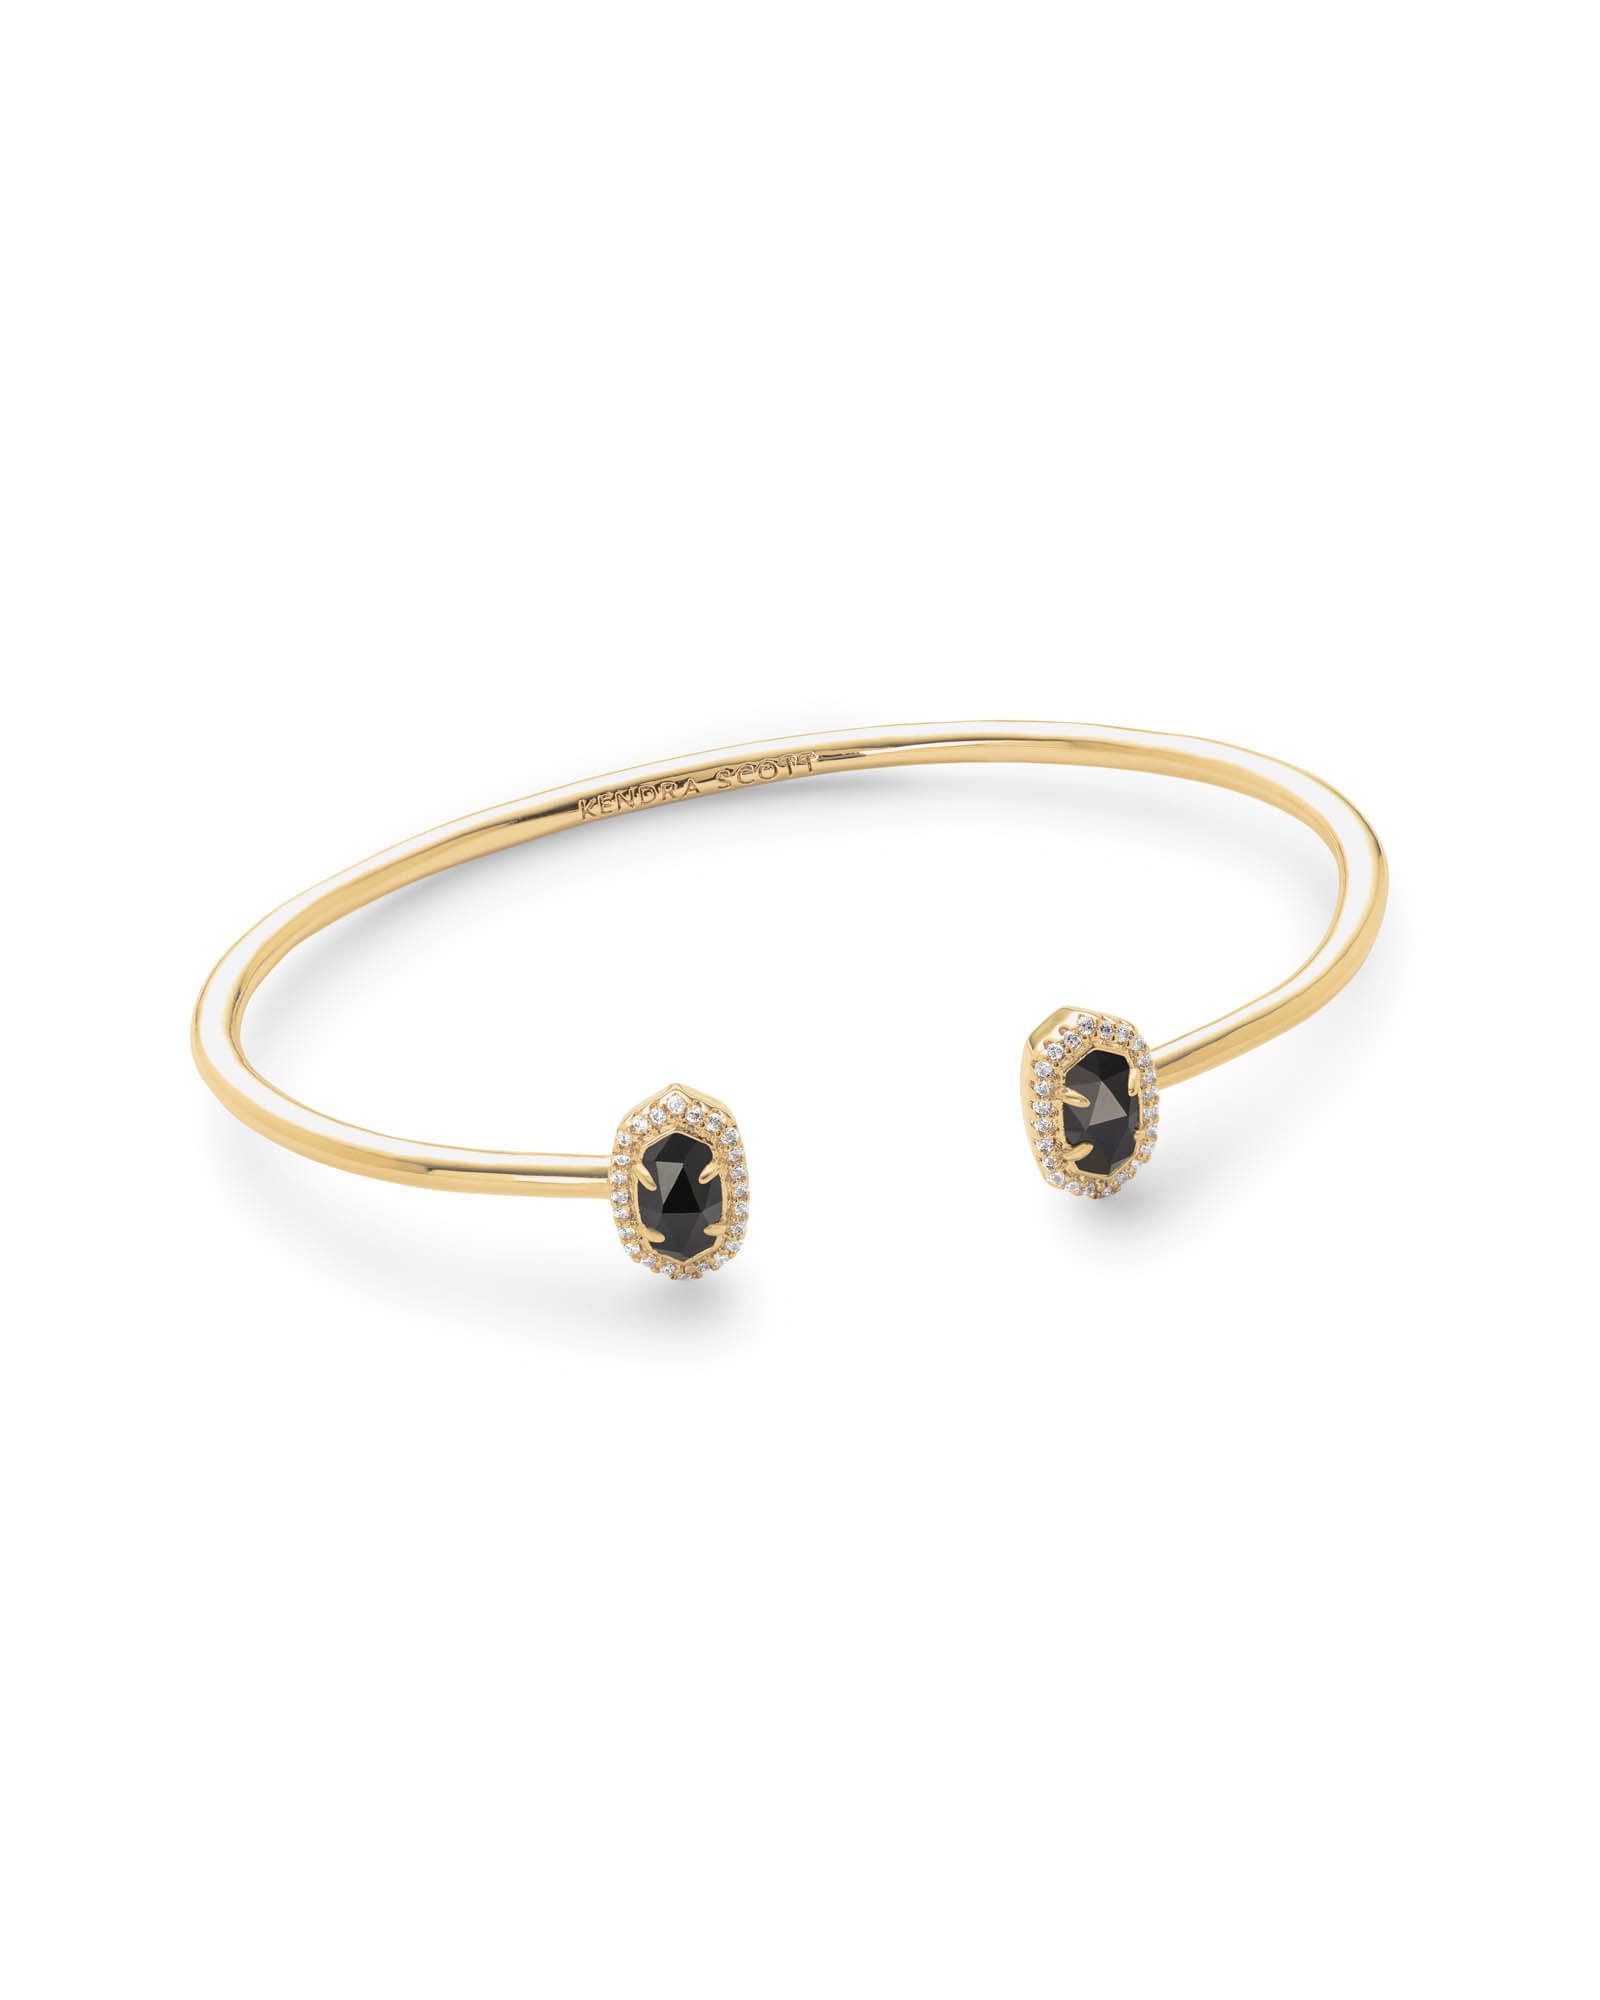 Calla Gold Cuff Bracelet in Black Opaque Glass | Kendra Scott